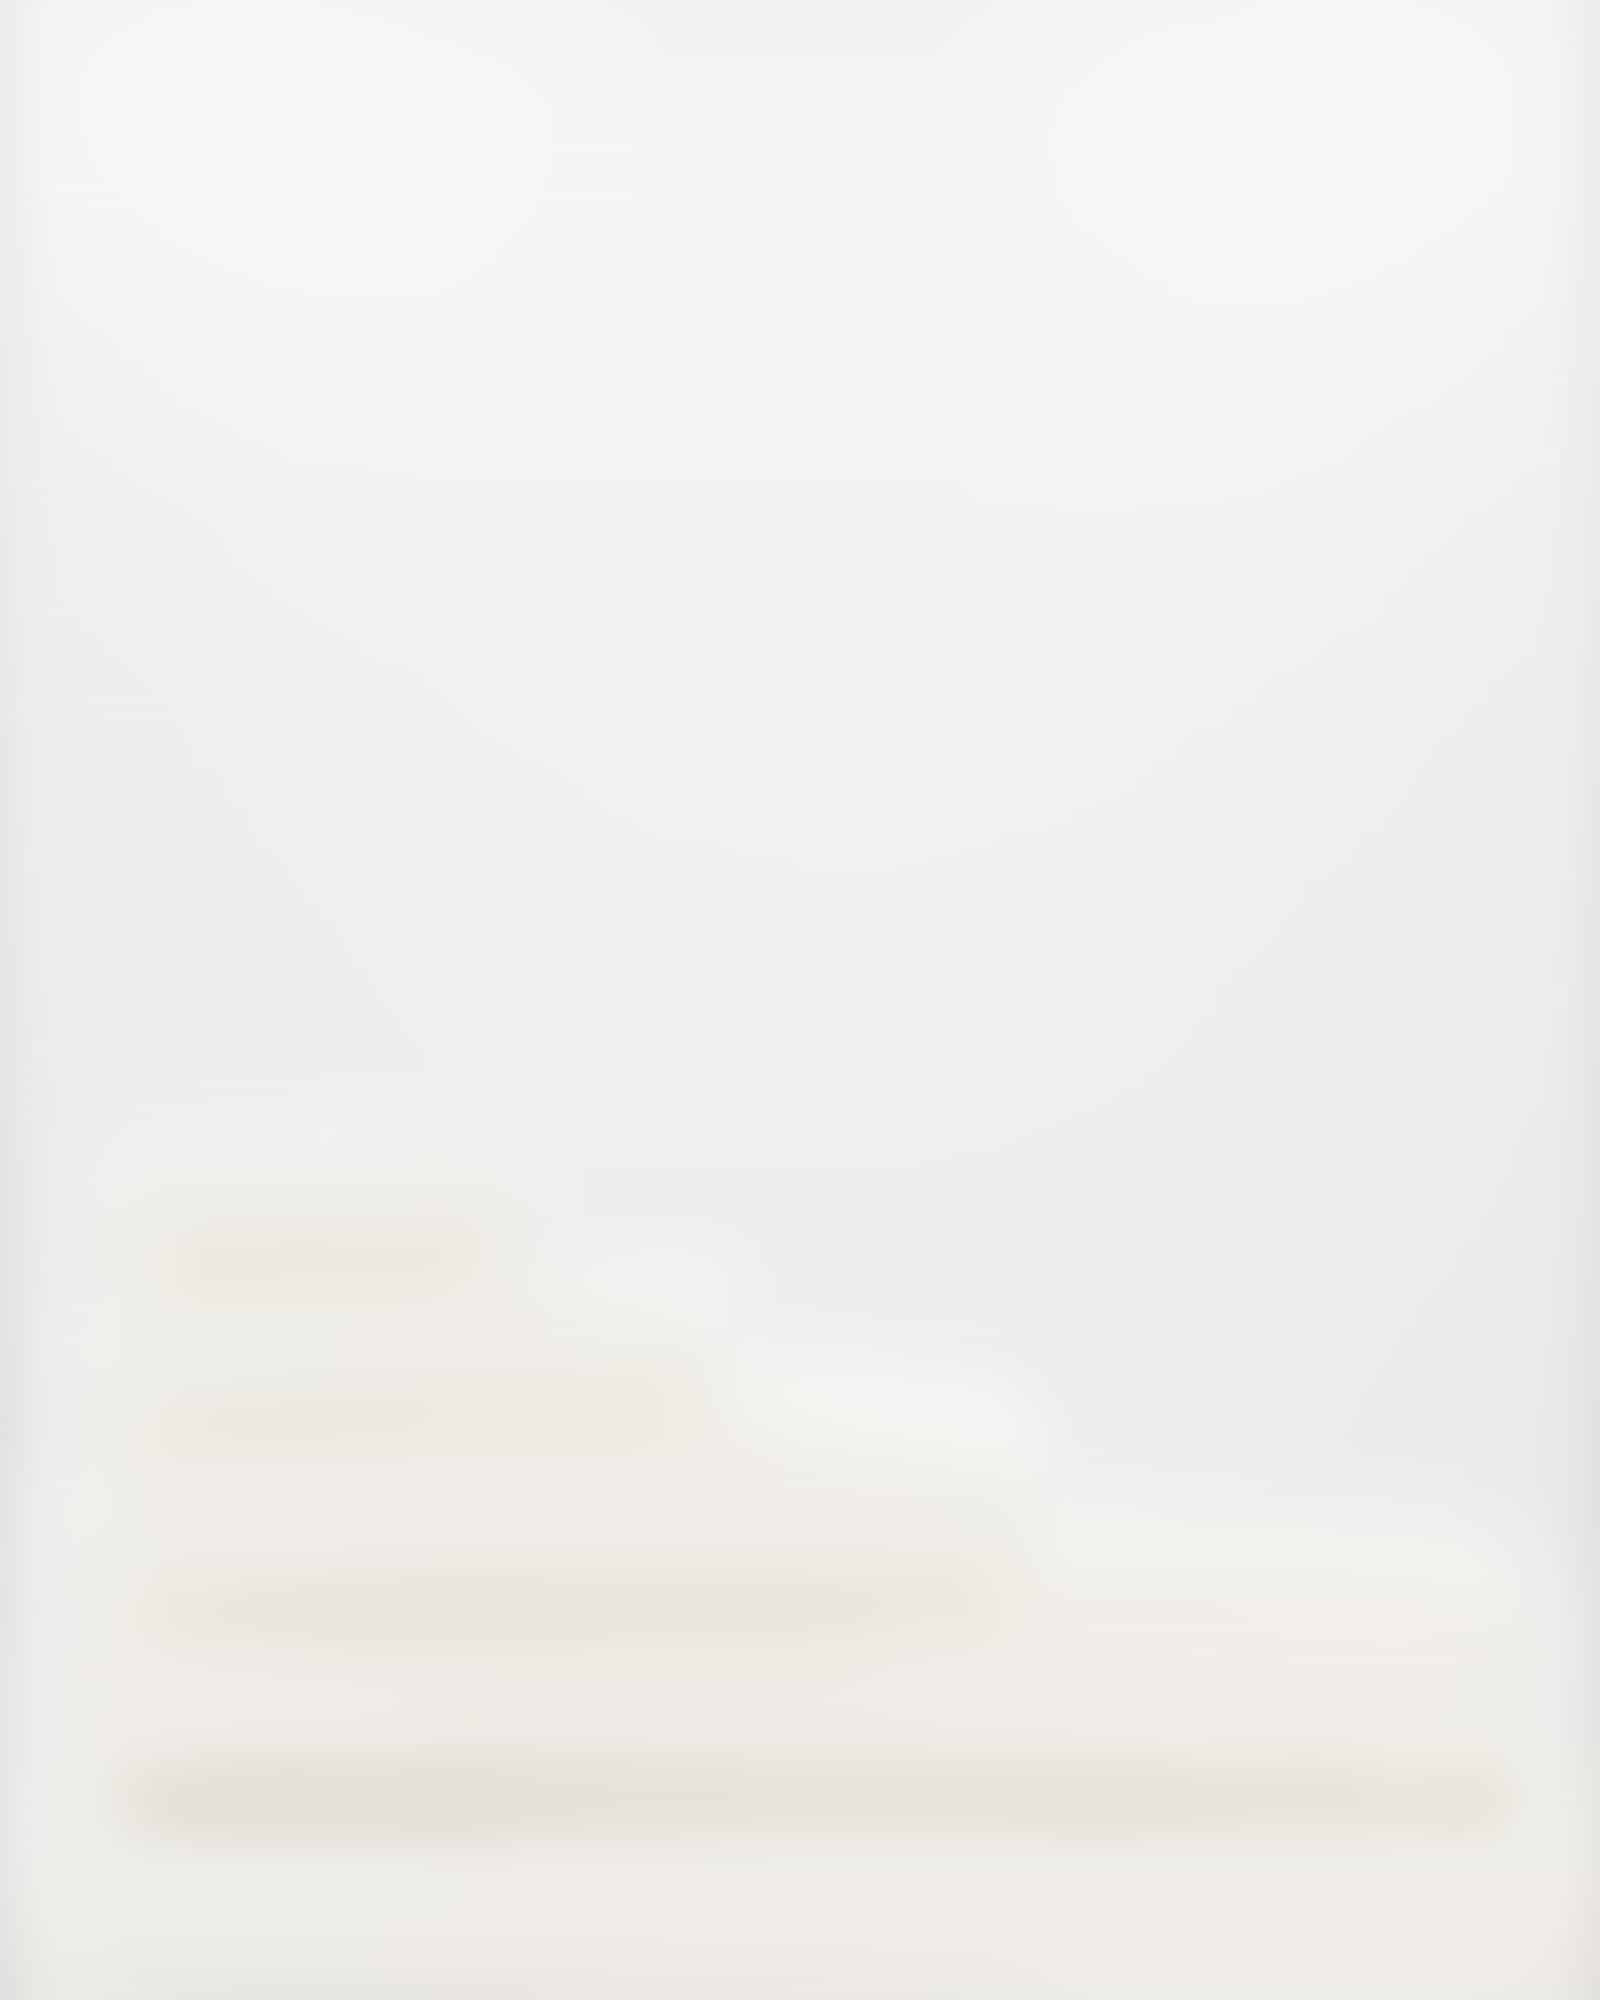 Möve - Superwuschel - Farbe: snow - 001 (0-1725/8775) - Seiflappen 30x30 cm